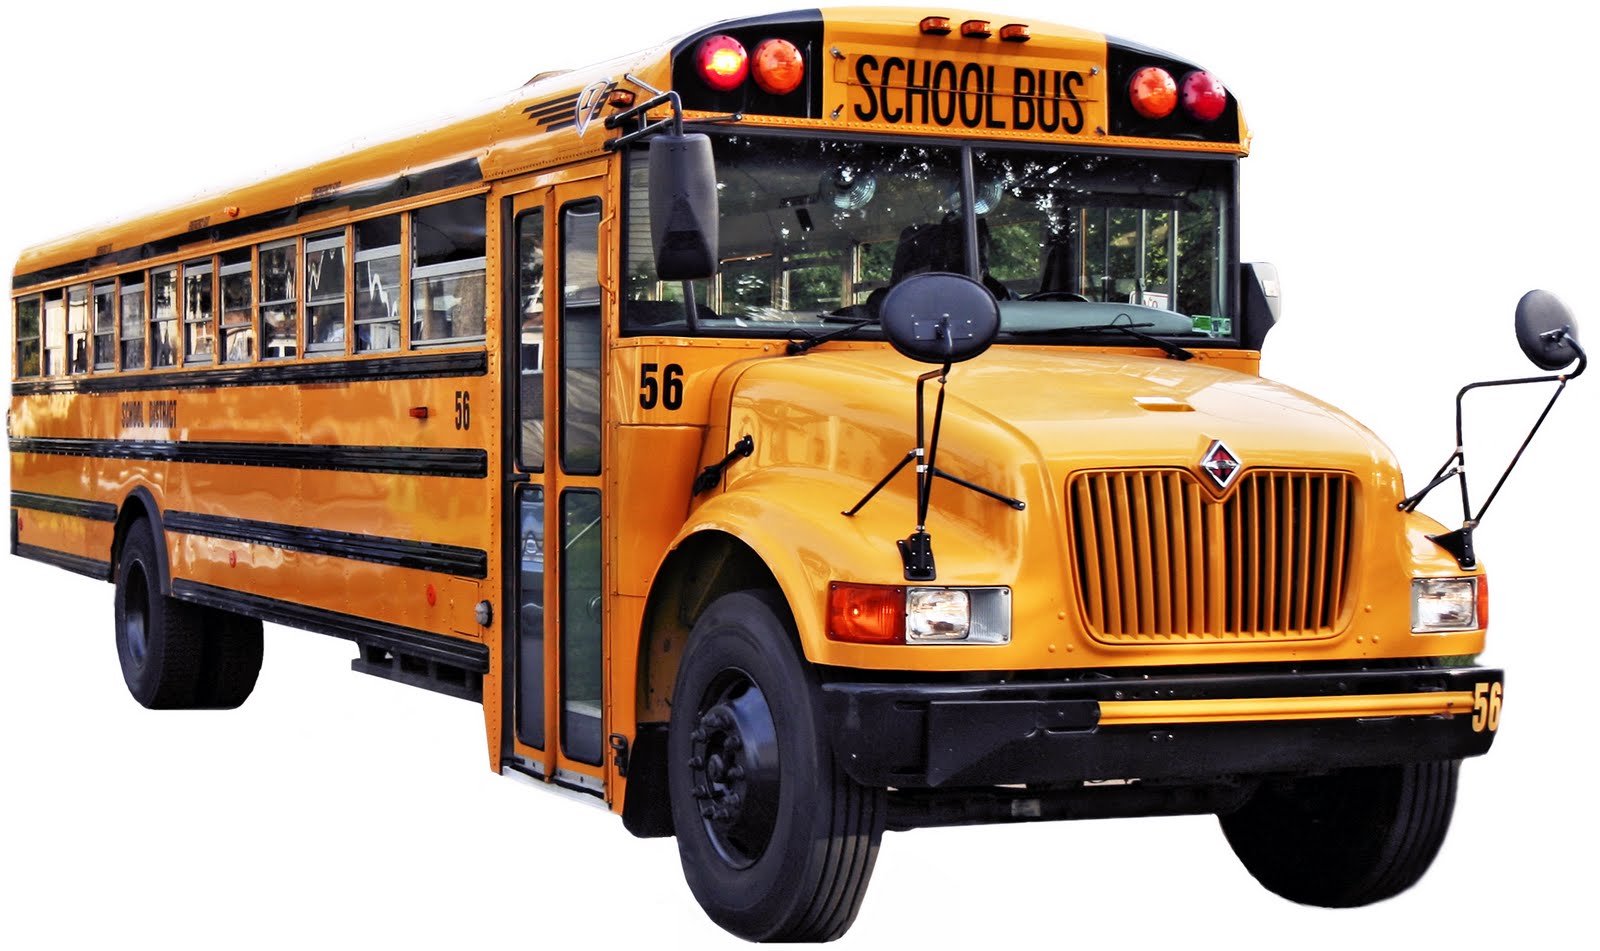 Amerykański schoolbus - potężny pojazd zapewniający podróżującym nim dzieciom maksimum bezpieczeństwa.